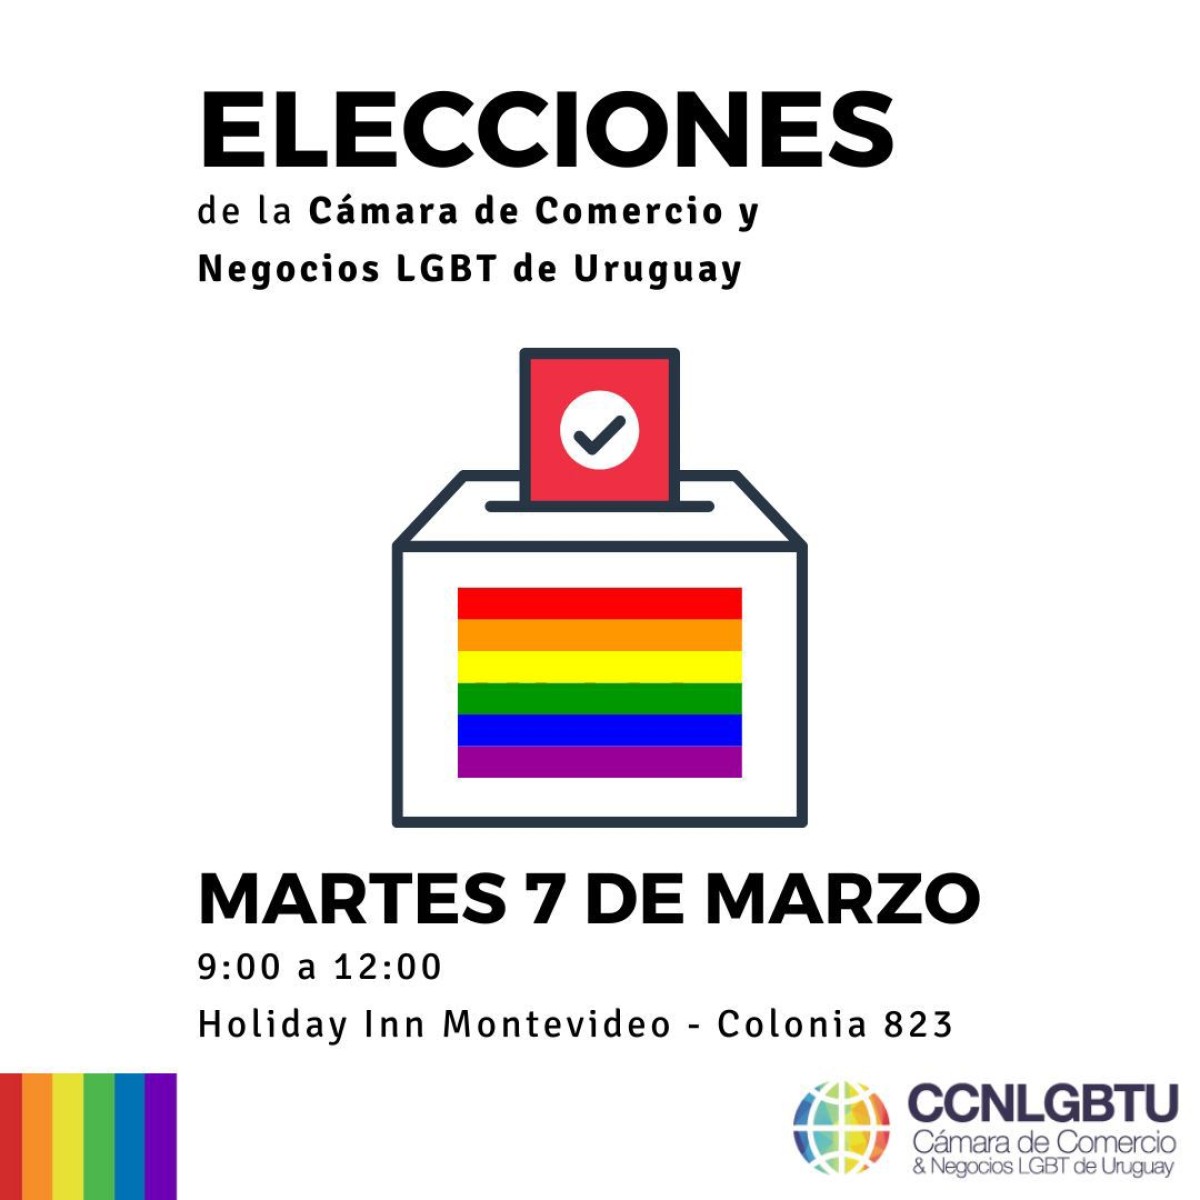 La Cámara de Comercio &amp; Negocios LGBT de Uruguay celebró elecciones